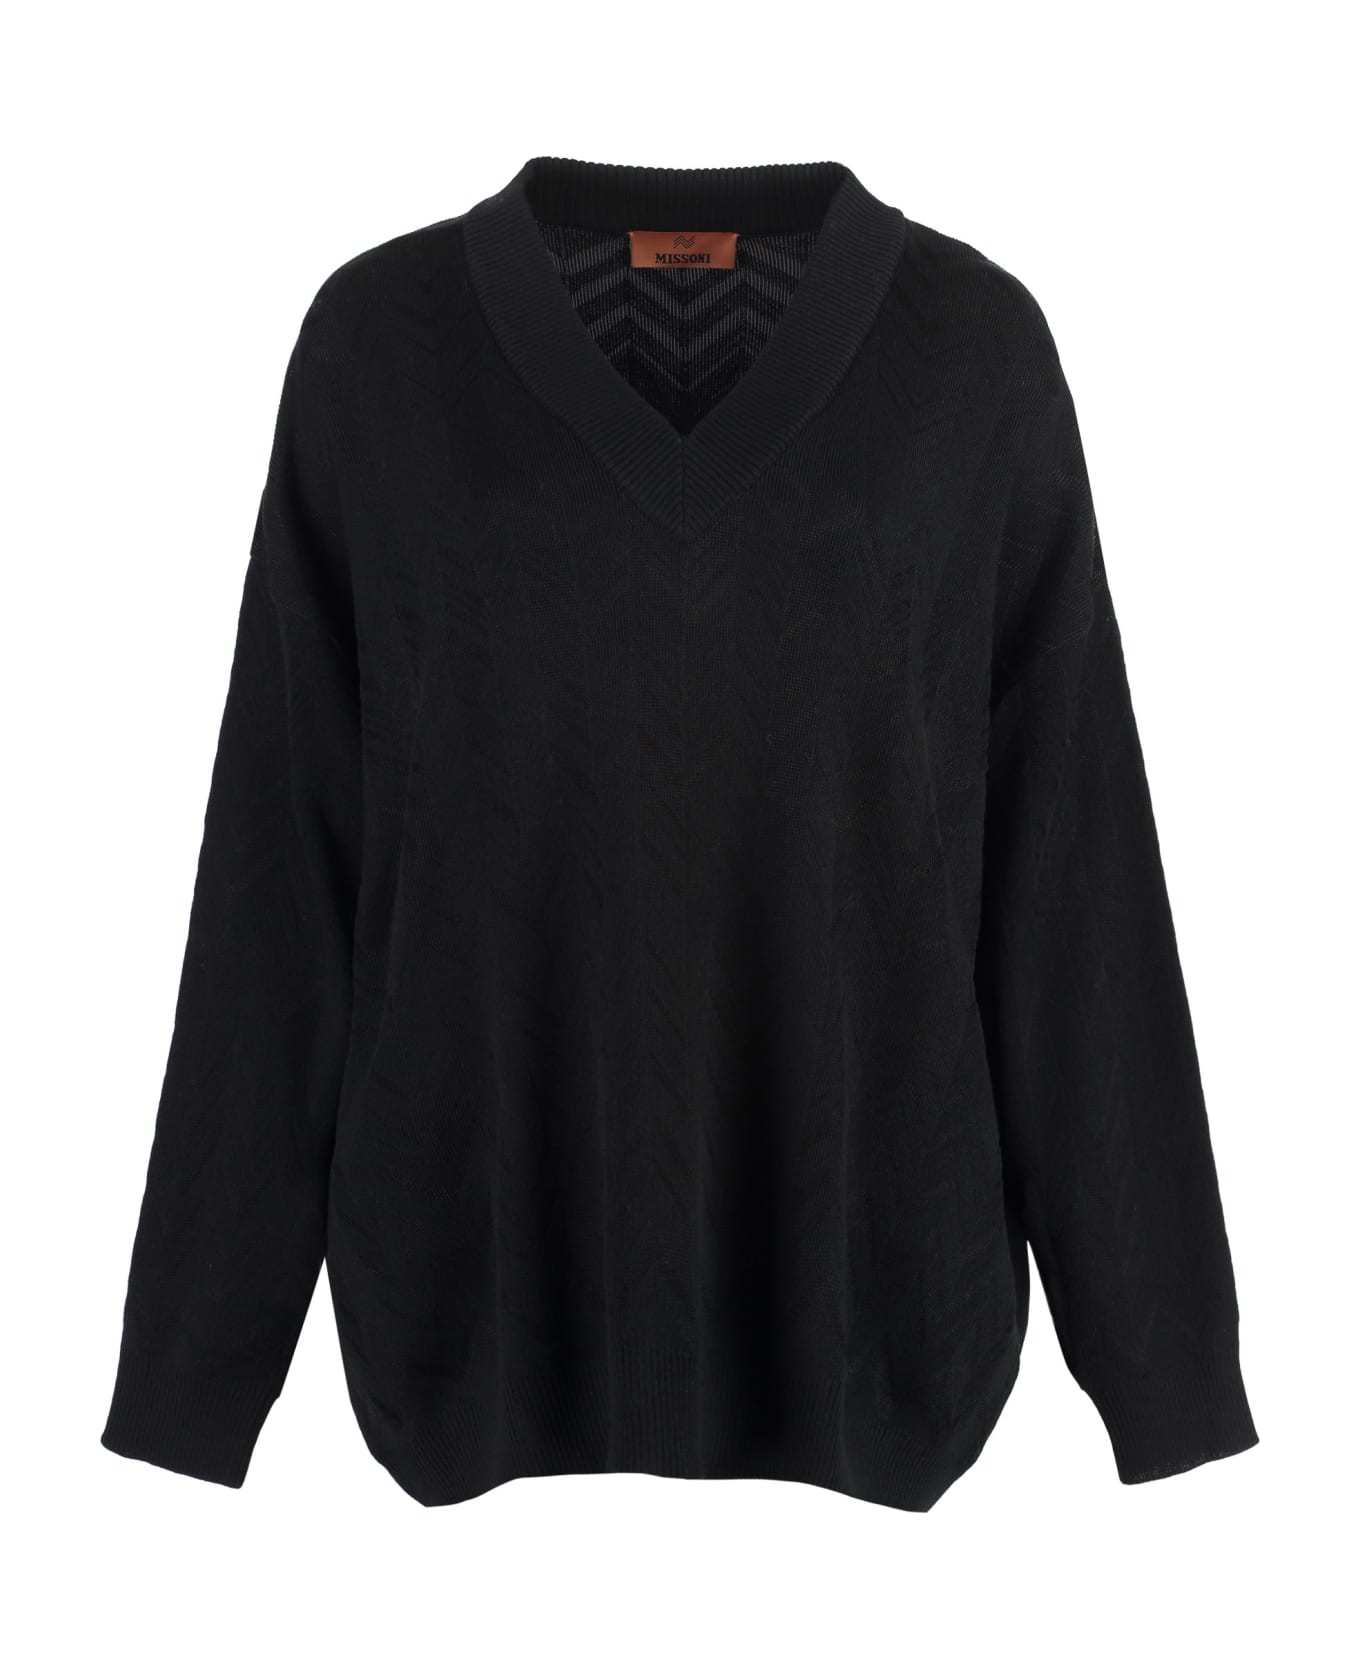 Missoni Wool Blend Sweater - black